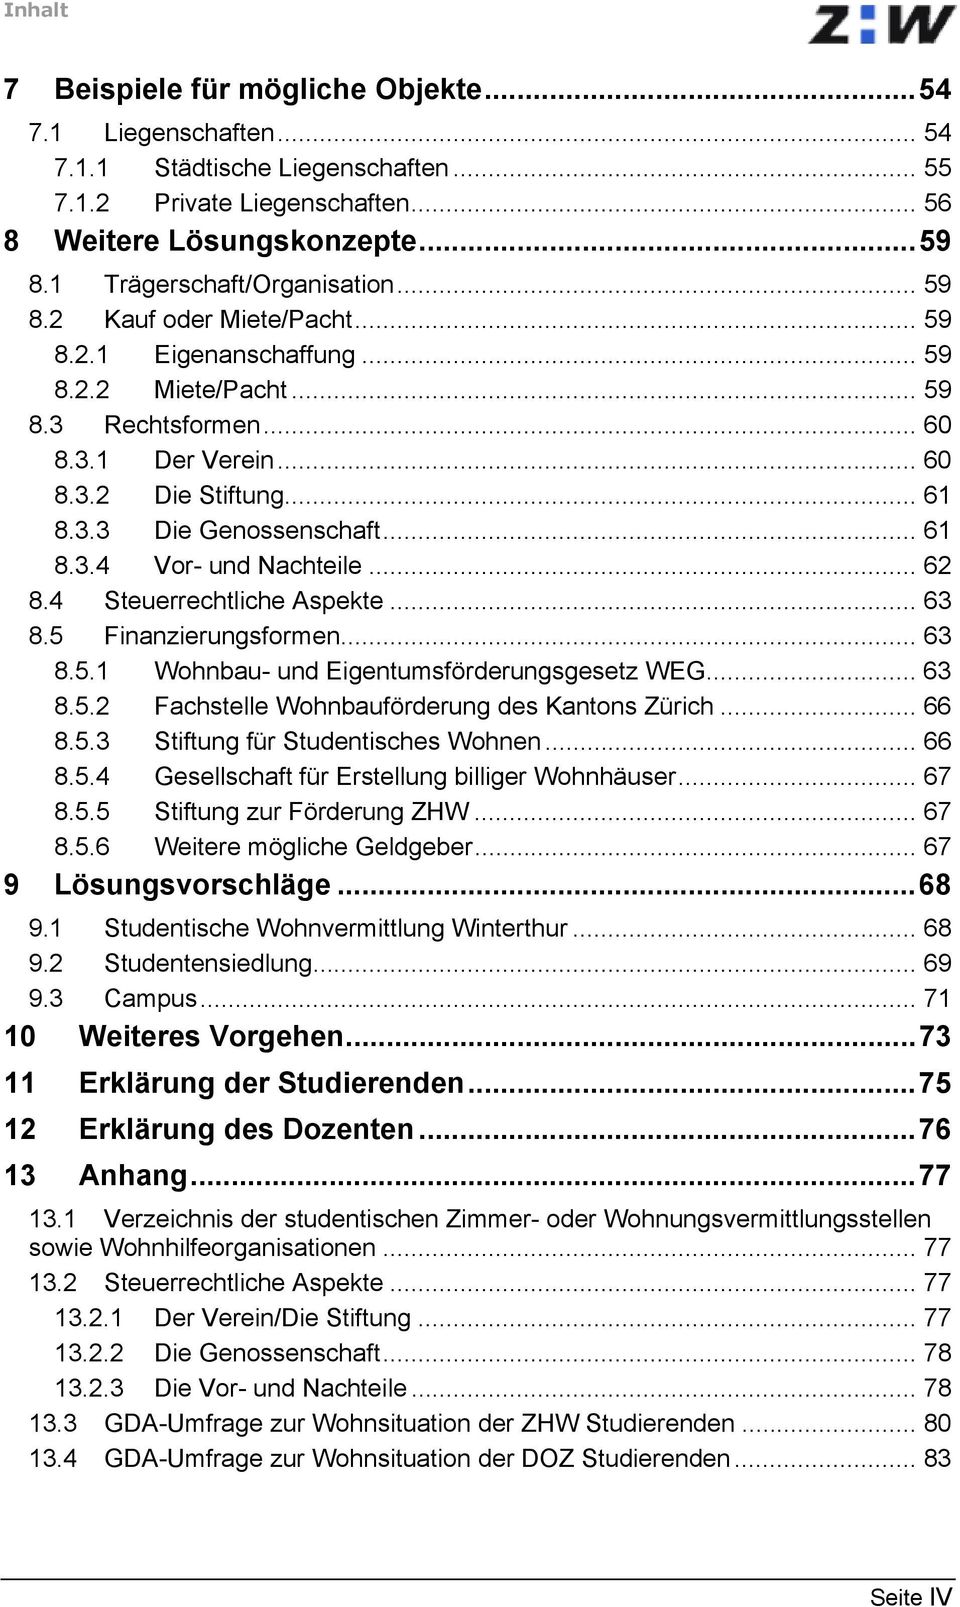 .. 61 8.3.4 Vor- und Nachteile... 62 8.4 Steuerrechtliche Aspekte... 63 8.5 Finanzierungsformen... 63 8.5.1 Wohnbau- und Eigentumsförderungsgesetz WEG... 63 8.5.2 Fachstelle Wohnbauförderung des Kantons Zürich.